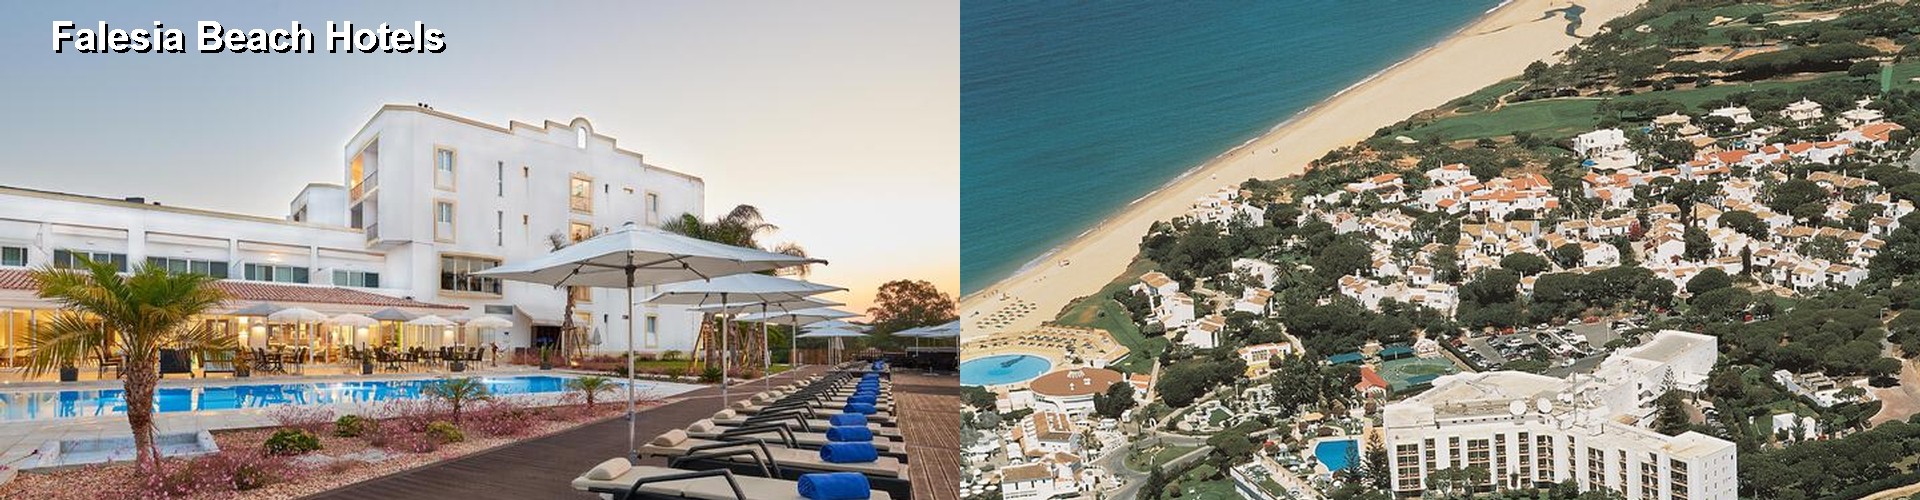 5 Best Hotels near Falesia Beach